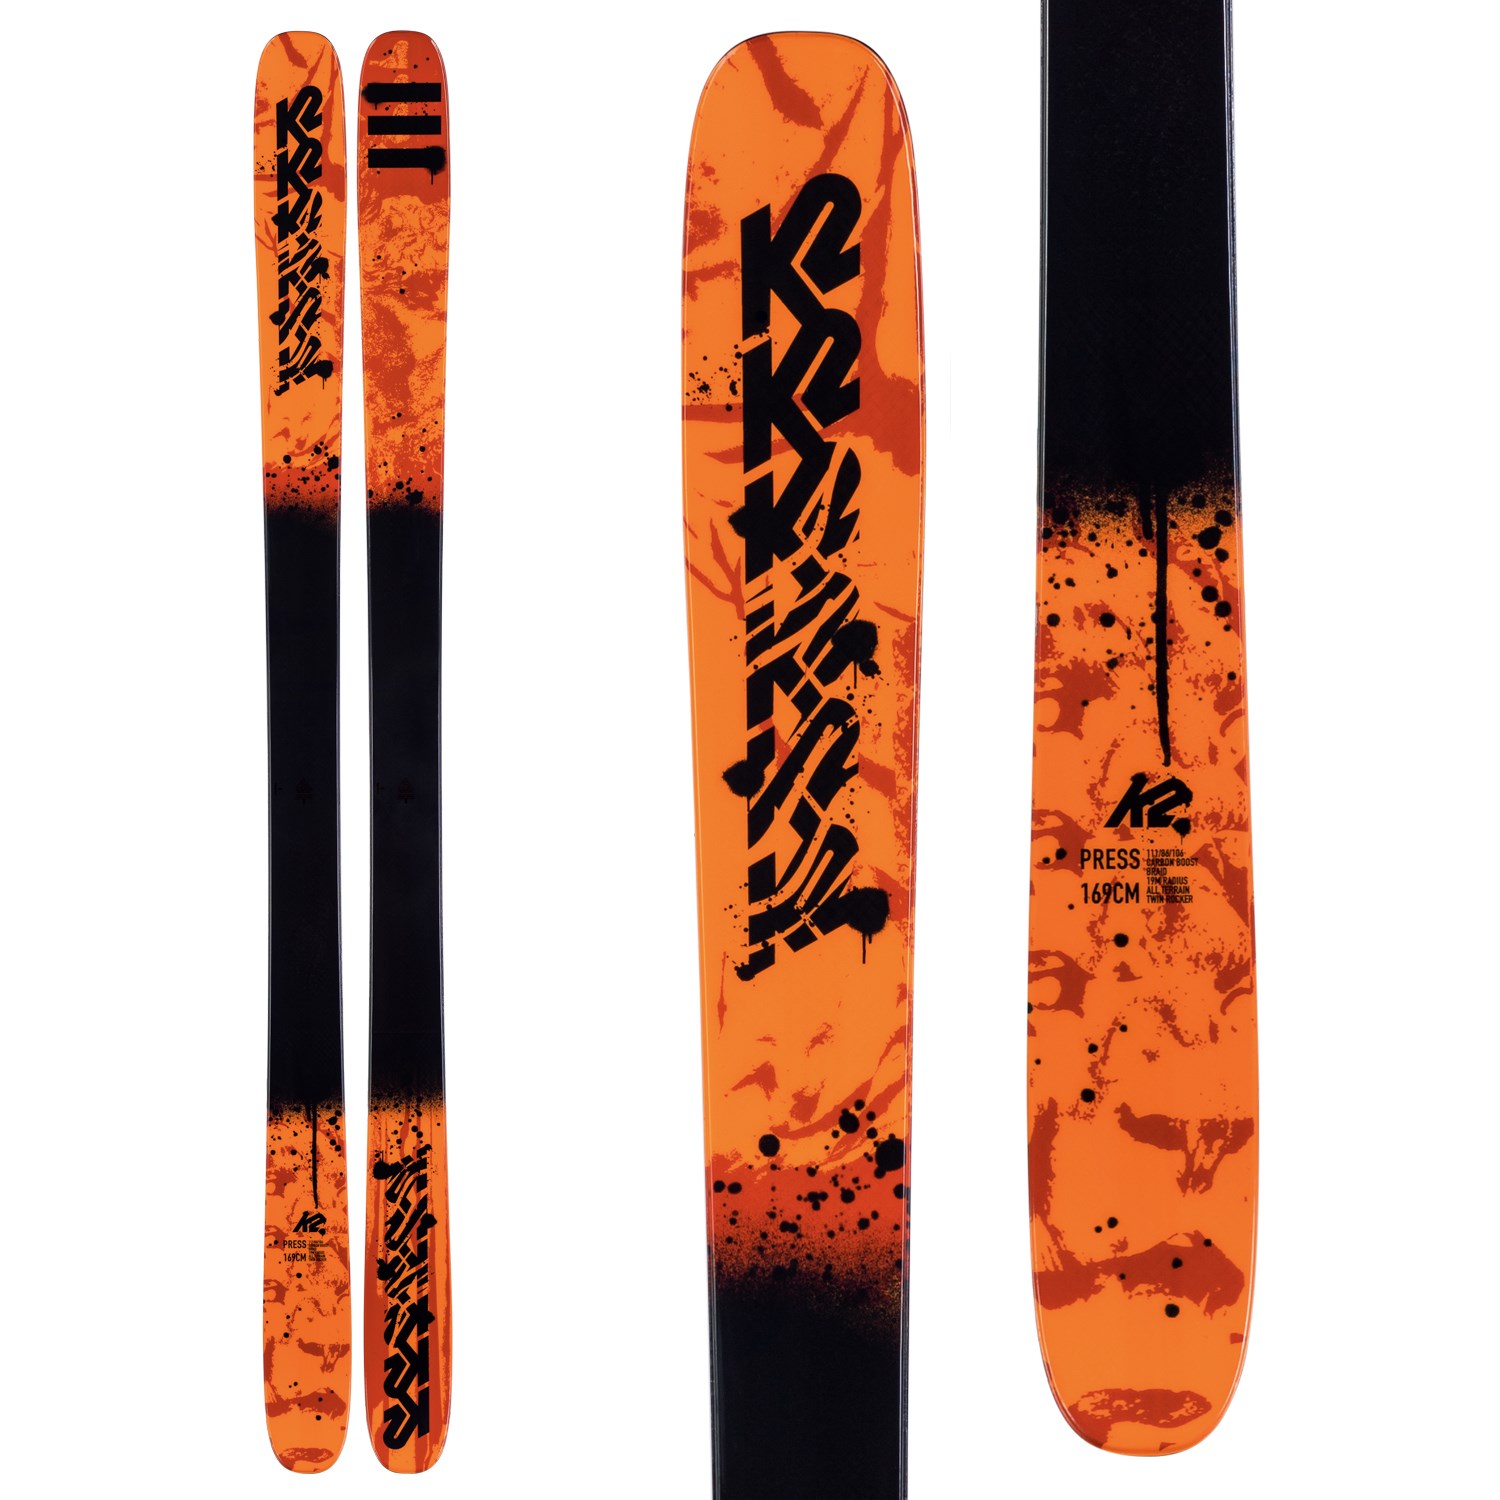 NEW! 2020 K2 Press Skis-159cm 